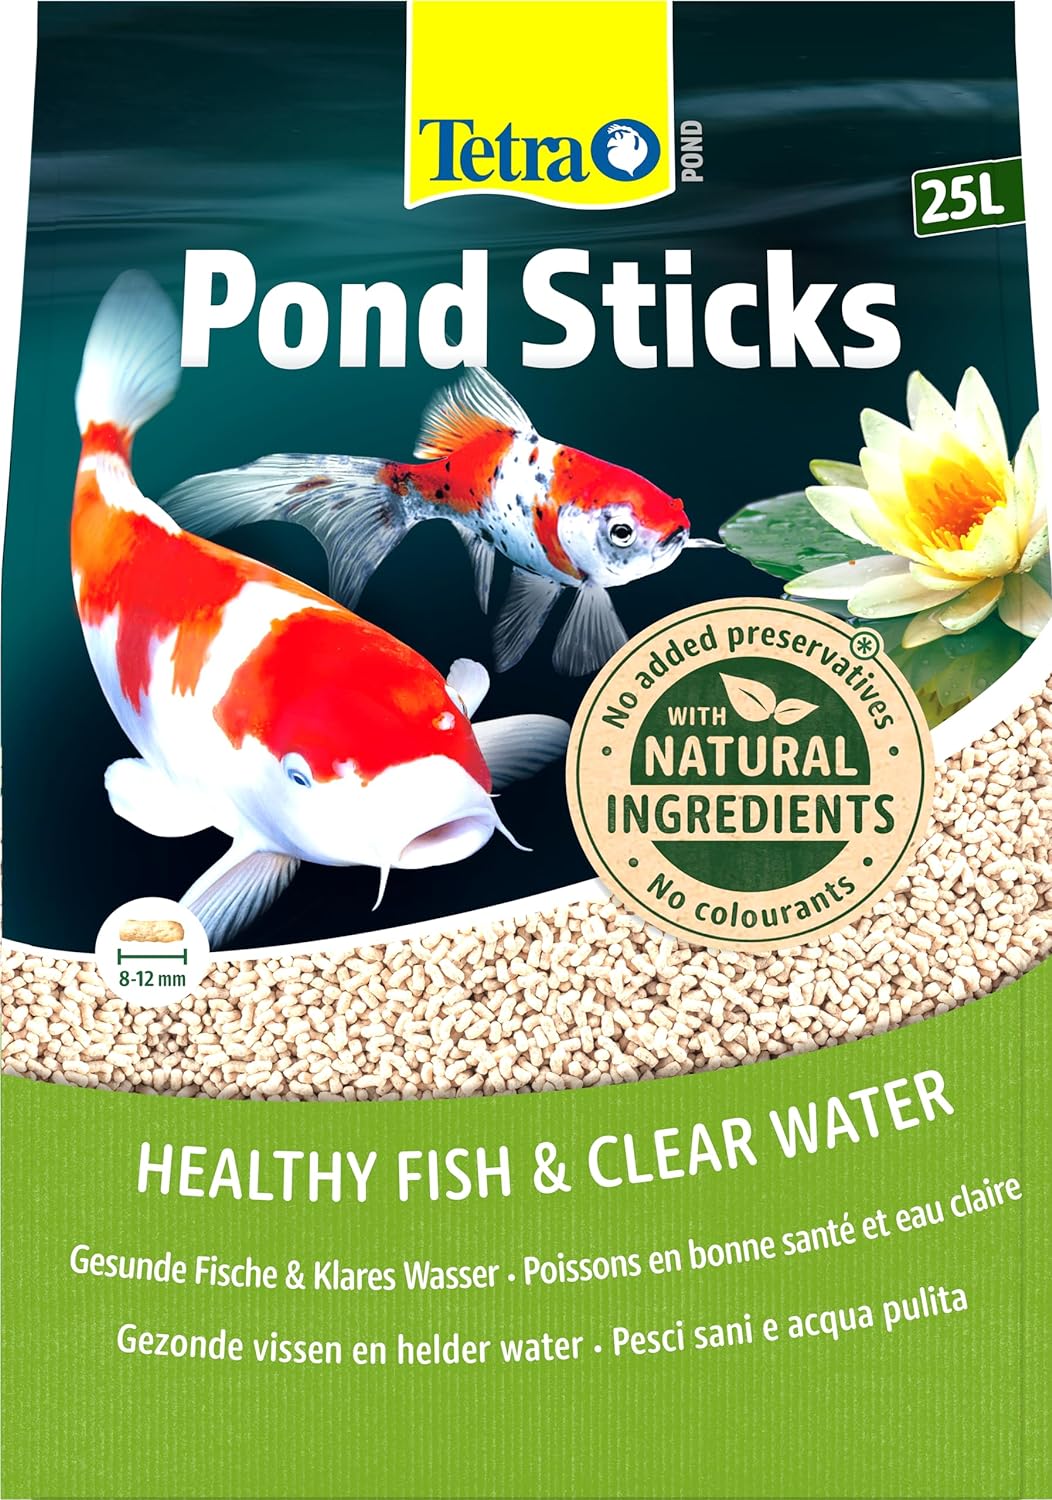 TETRA Pond Sticks 25L aliment complet en sticks pour tous poissons de bassin